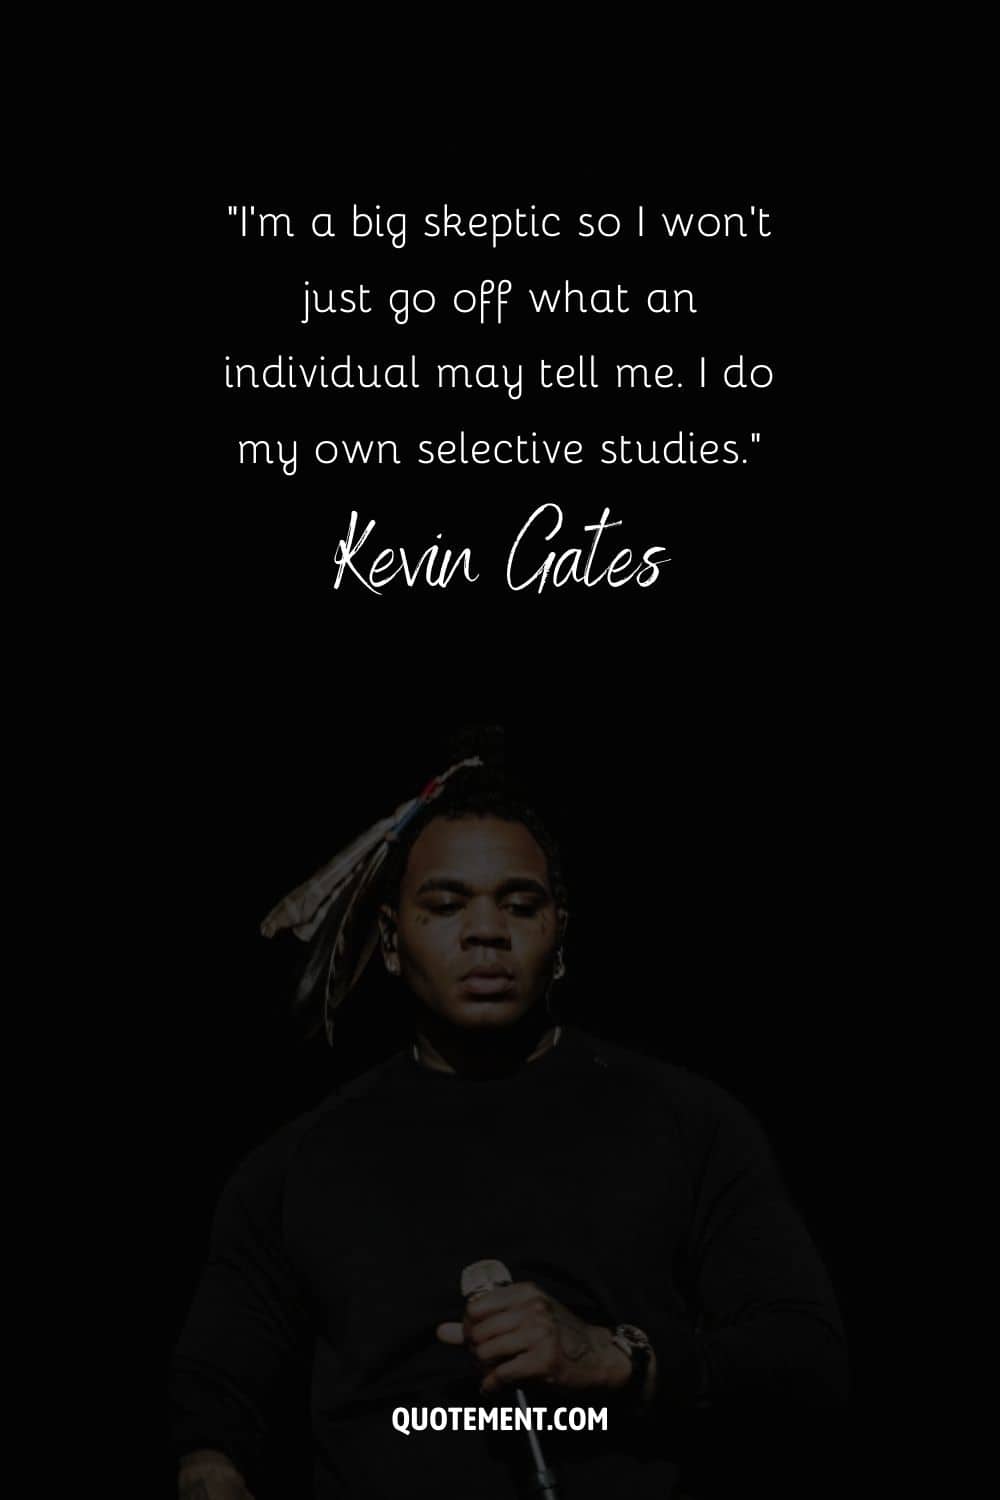 "Soy un gran escéptico, así que no me guío sólo por lo que me pueda decir un individuo. Hago mis propios estudios selectivos". - Kevin Gates